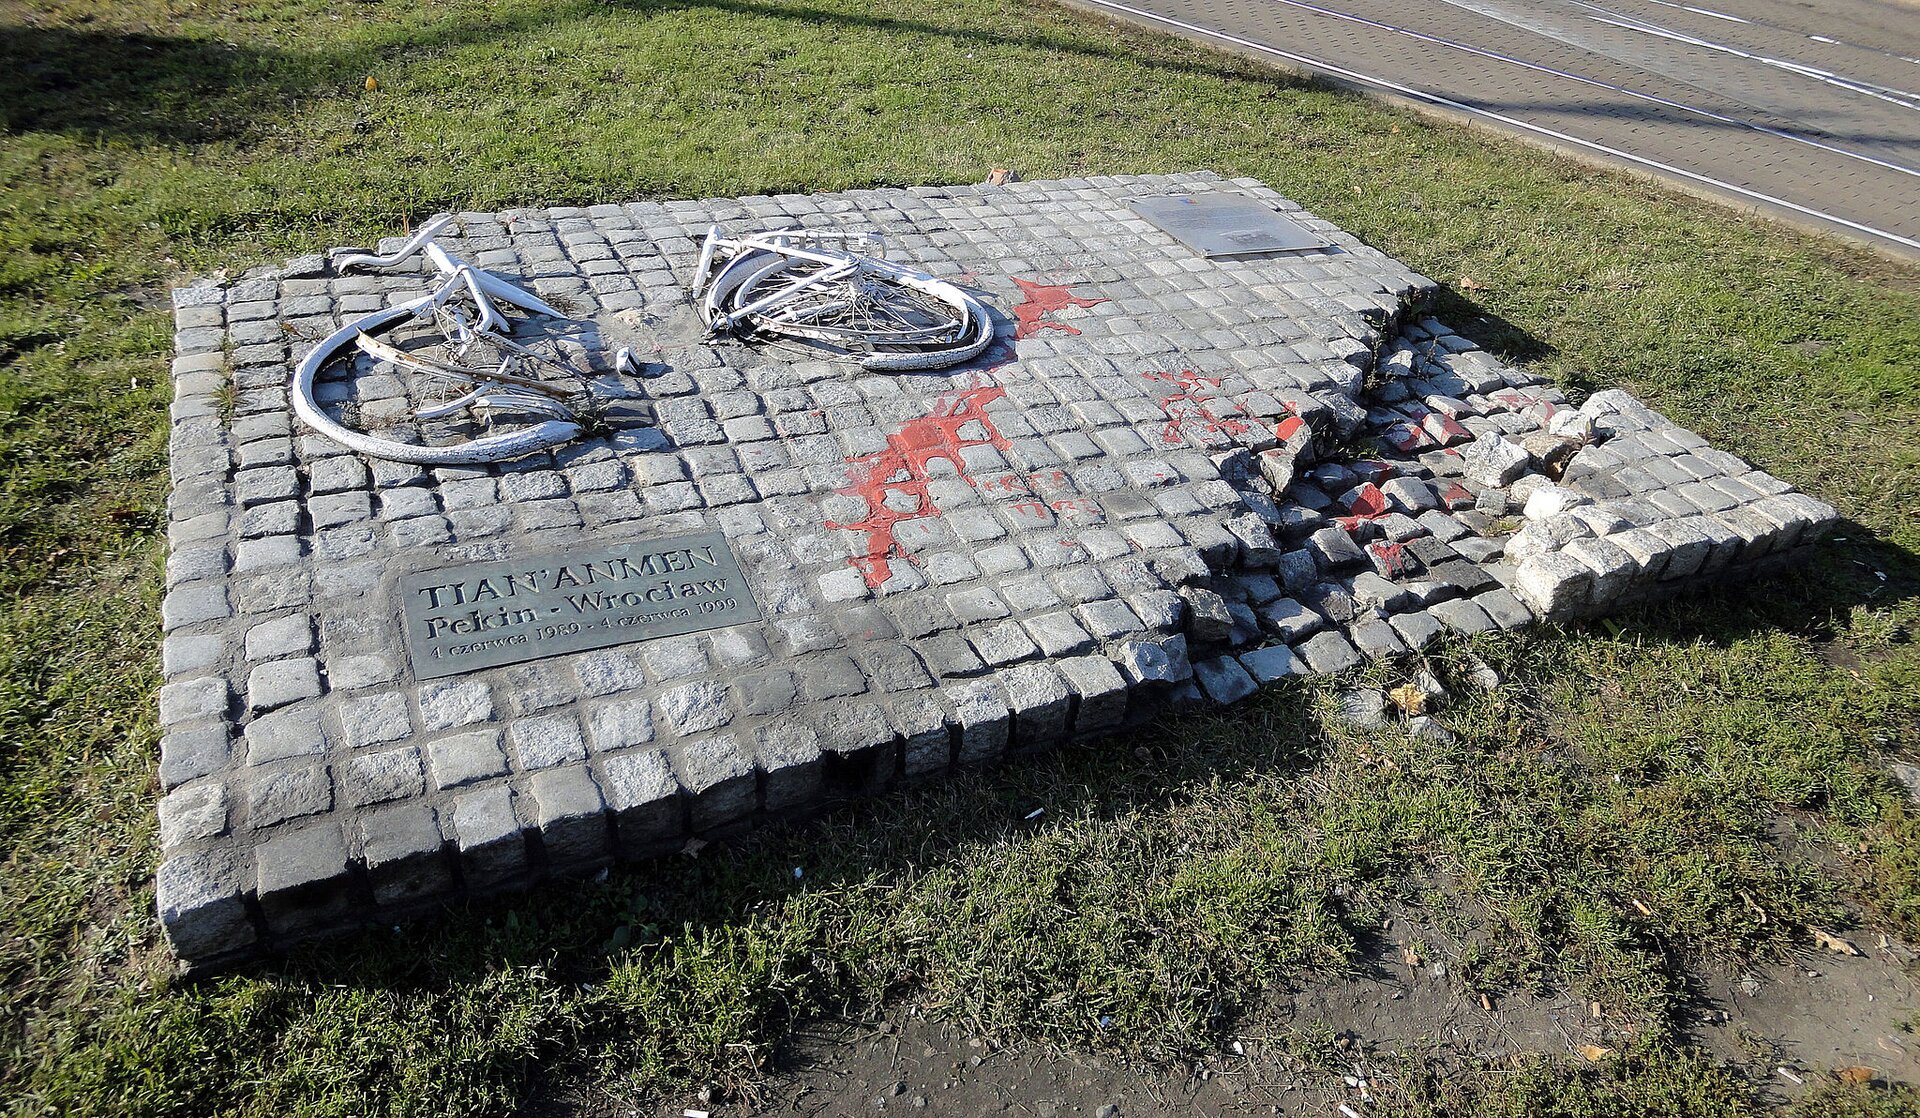 Na zdjęciu znajduje się replika zniszczonego w 1989 roku przez komunistów pomnika we Wrocławiu poświęconego masakrze na placu Tian’anmen z 4 czerwca 1989 roku. Na pomniku położony jest przepołowiony na pół biały rower. W lewym dolnym rogu pomnika nie ma części kostki. Na pomniku jest rozlana czerwona ciecz przypominająca krew. W lewym dolnym rogu umieszczono tablicę z napisem:   TIAN'ANMEN Pekin - Wrocław, 4 czerwca 1989 - 4 czerwca 1999.